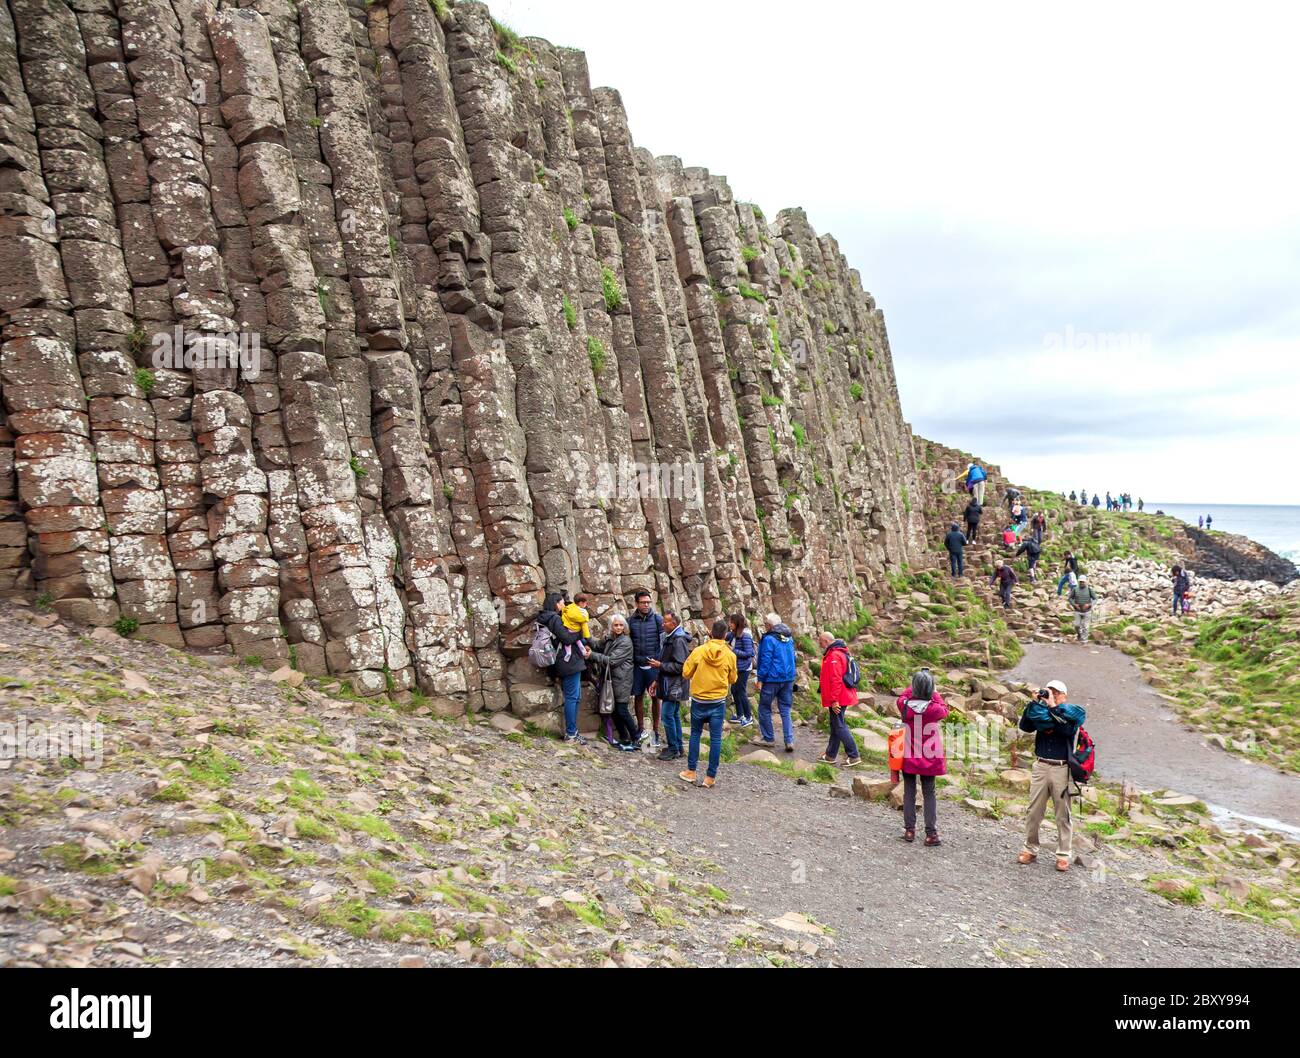 Les gens explorant les milliers d'anciennes colonnes de basalte imbriquées de la chaussée des géants sur la côte nord du comté d'Antrim, en Irlande du Nord. Banque D'Images